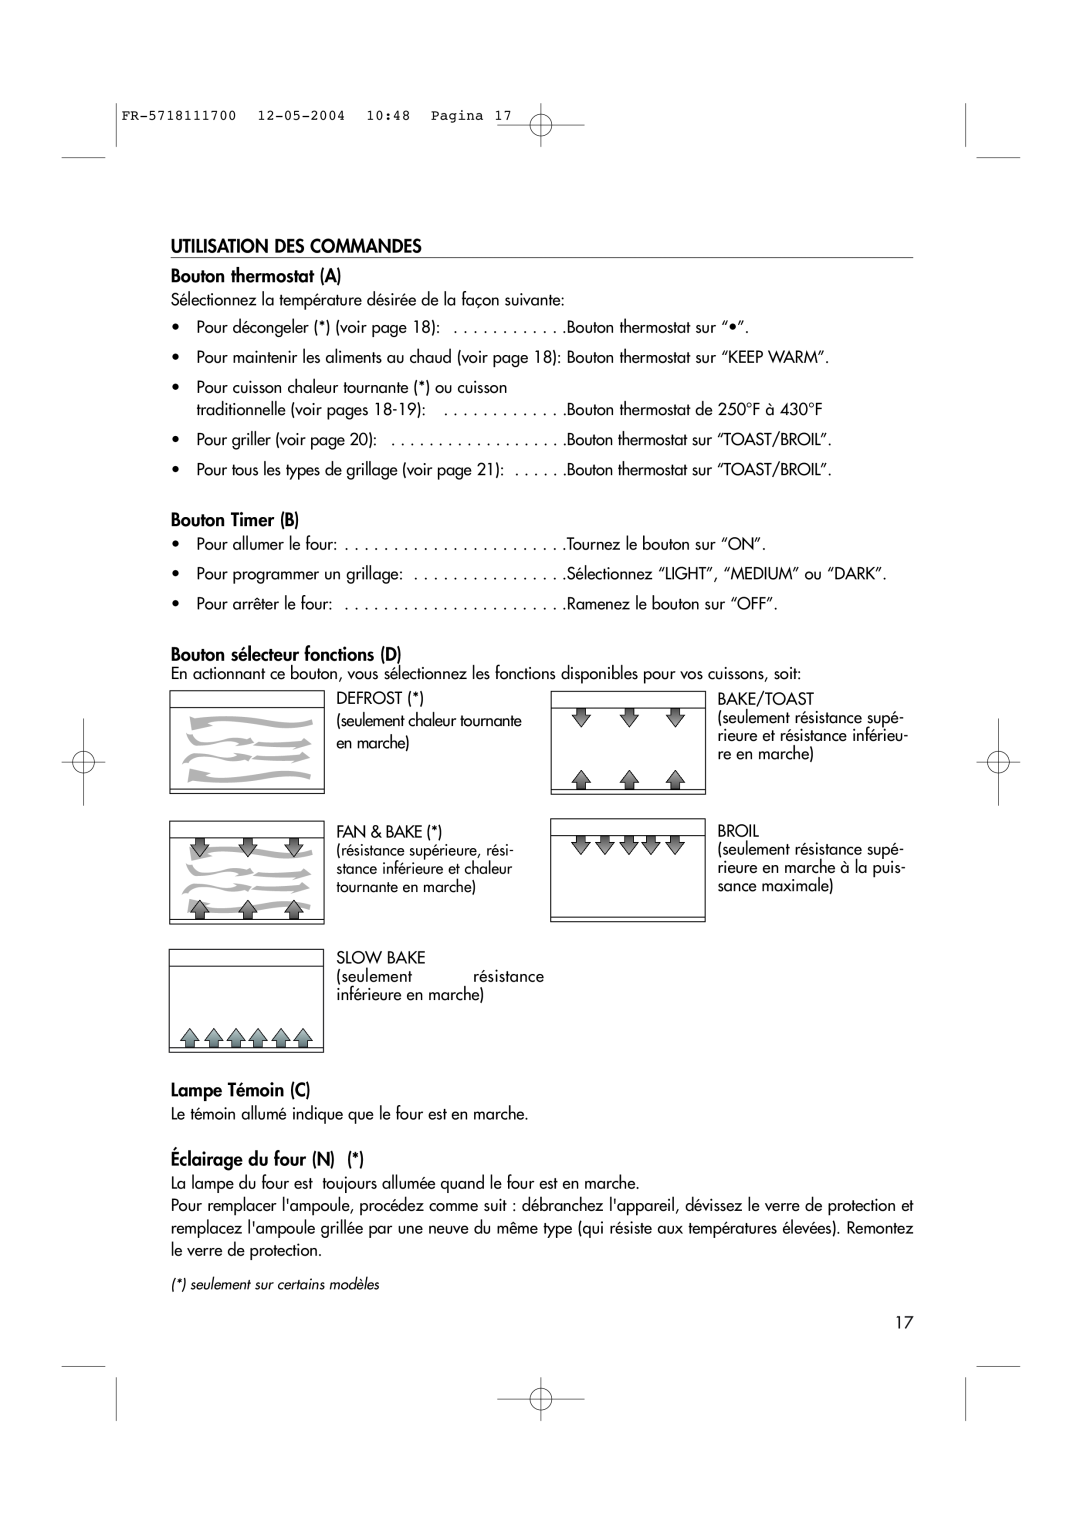 DeLonghi EO1200 Series manual UTILISATION DES COMMANDES Bouton thermostat A, Bouton Timer B, Bouton sélecteur fonctions D 